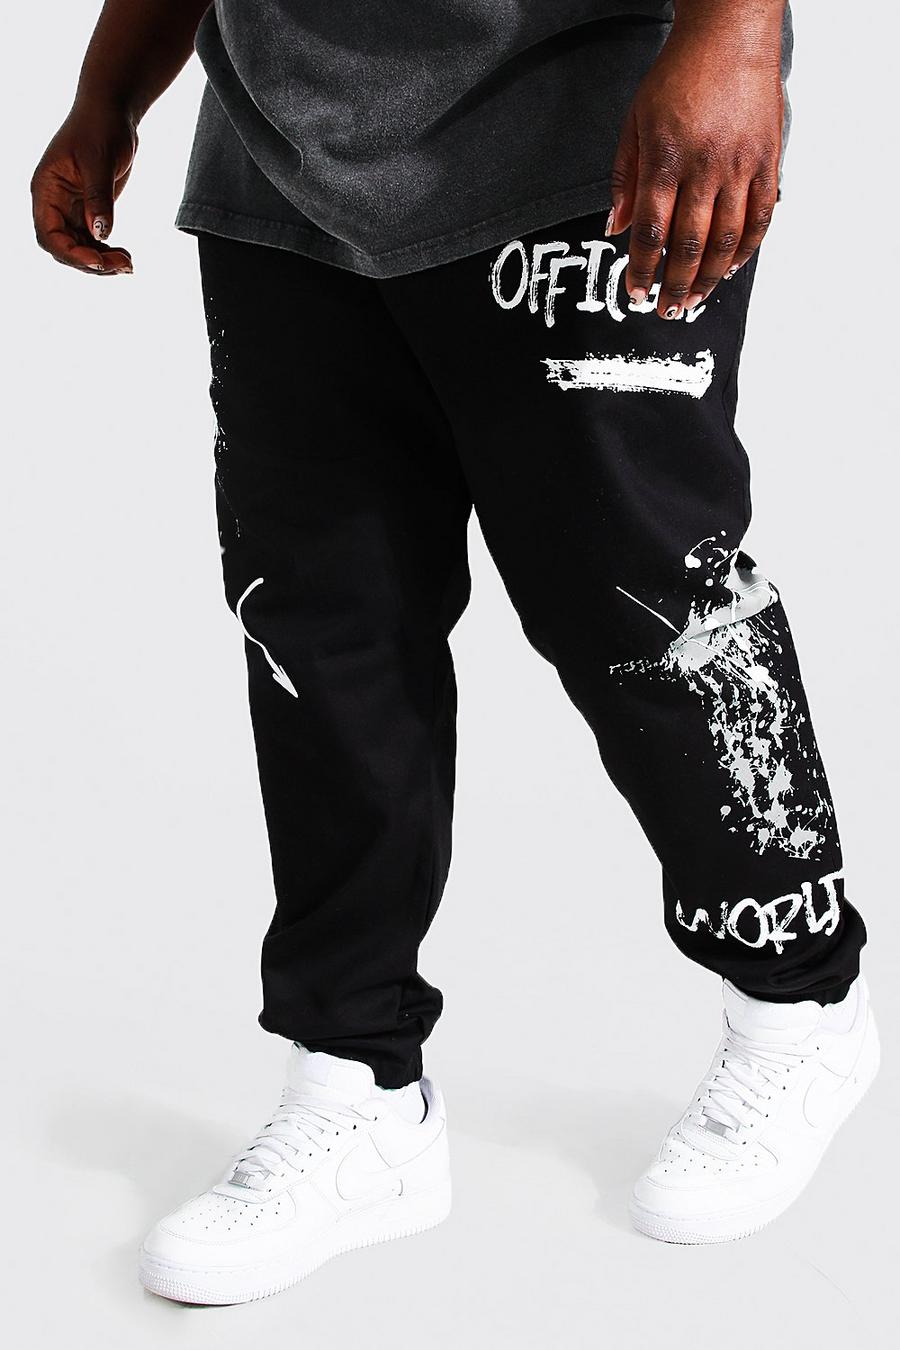 Pantalón deportivo Plus cargo ajustado de sarga con estampado de grafiti, Black nero image number 1